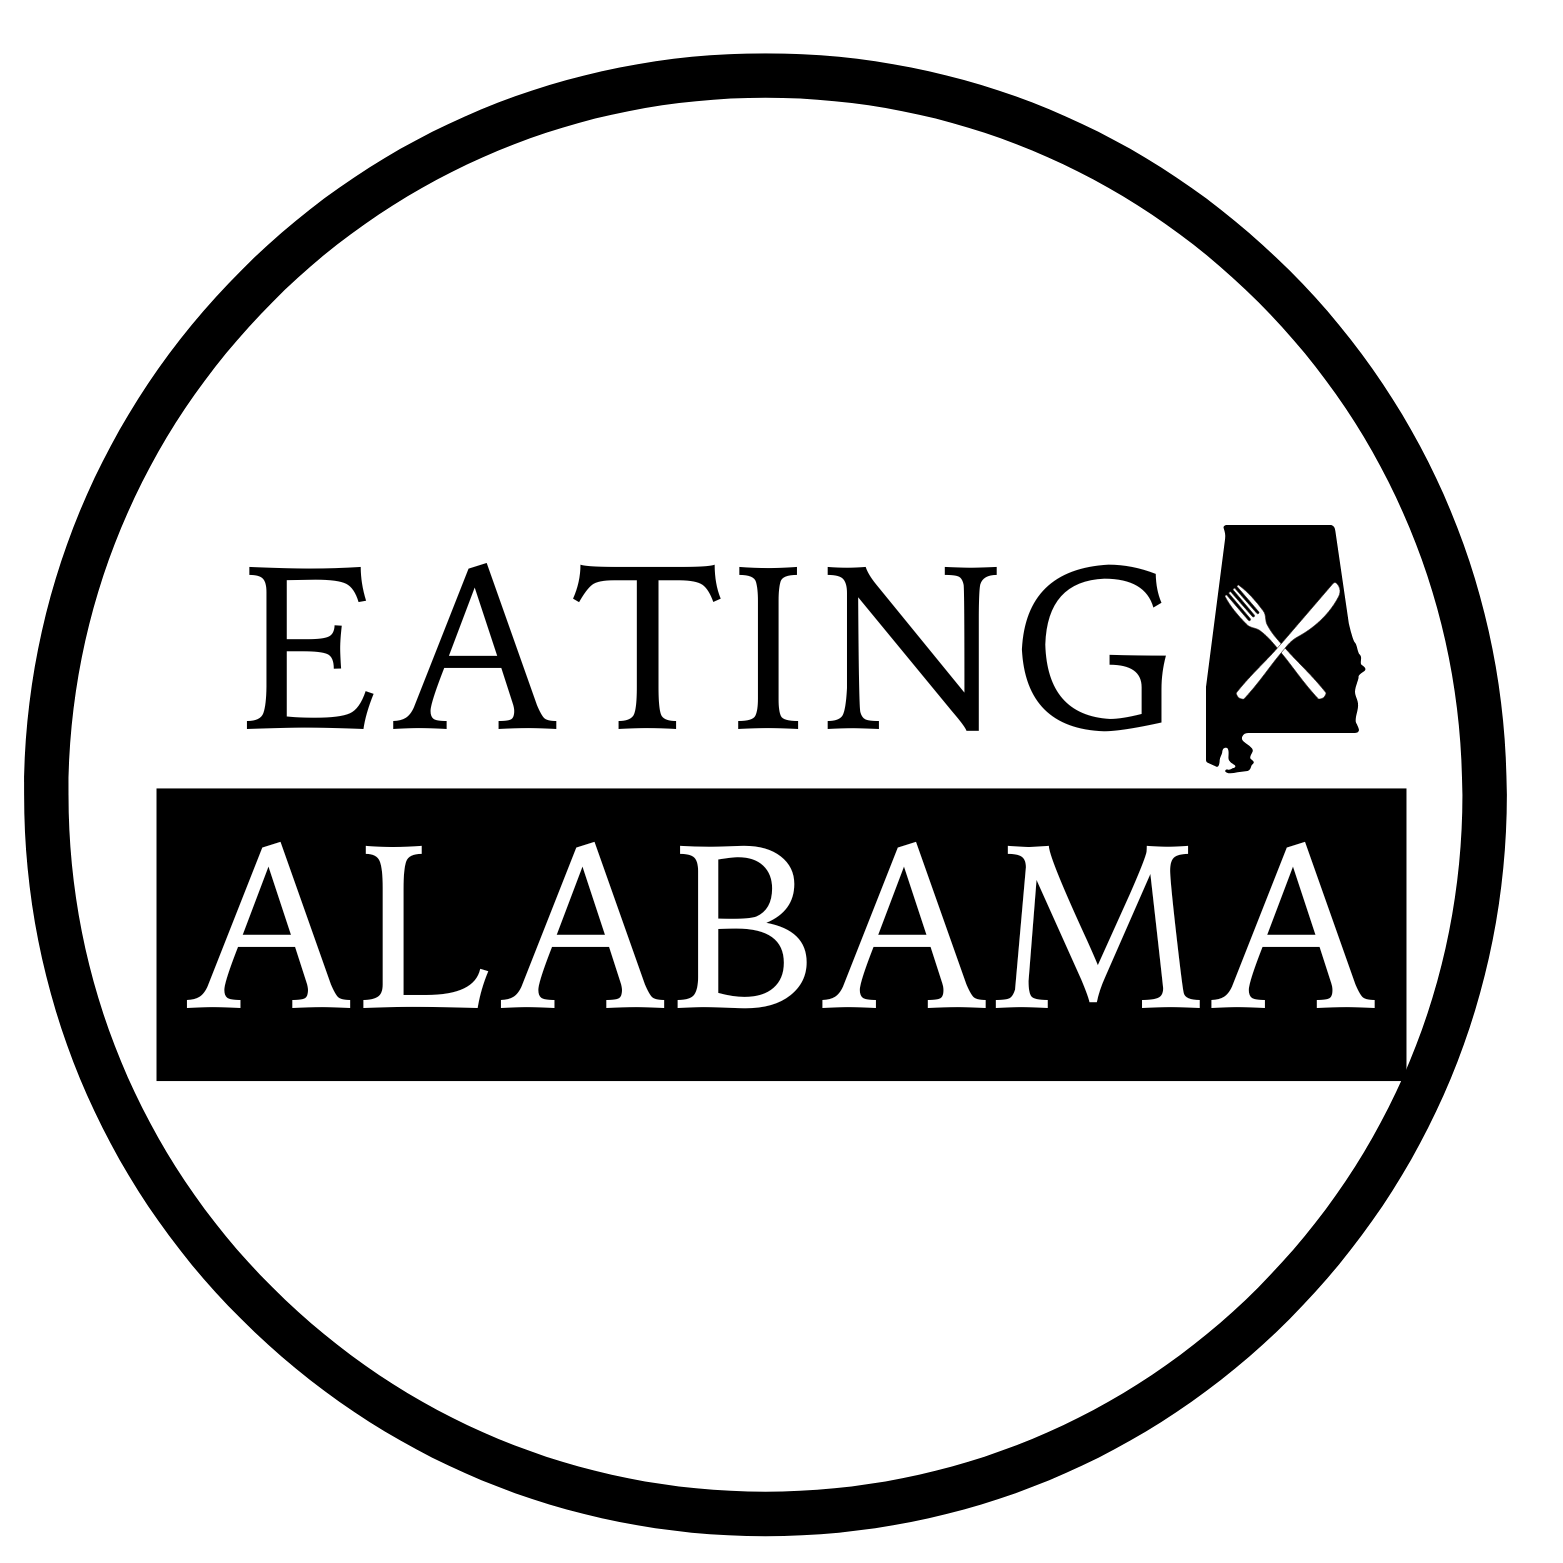 Eating Alabama